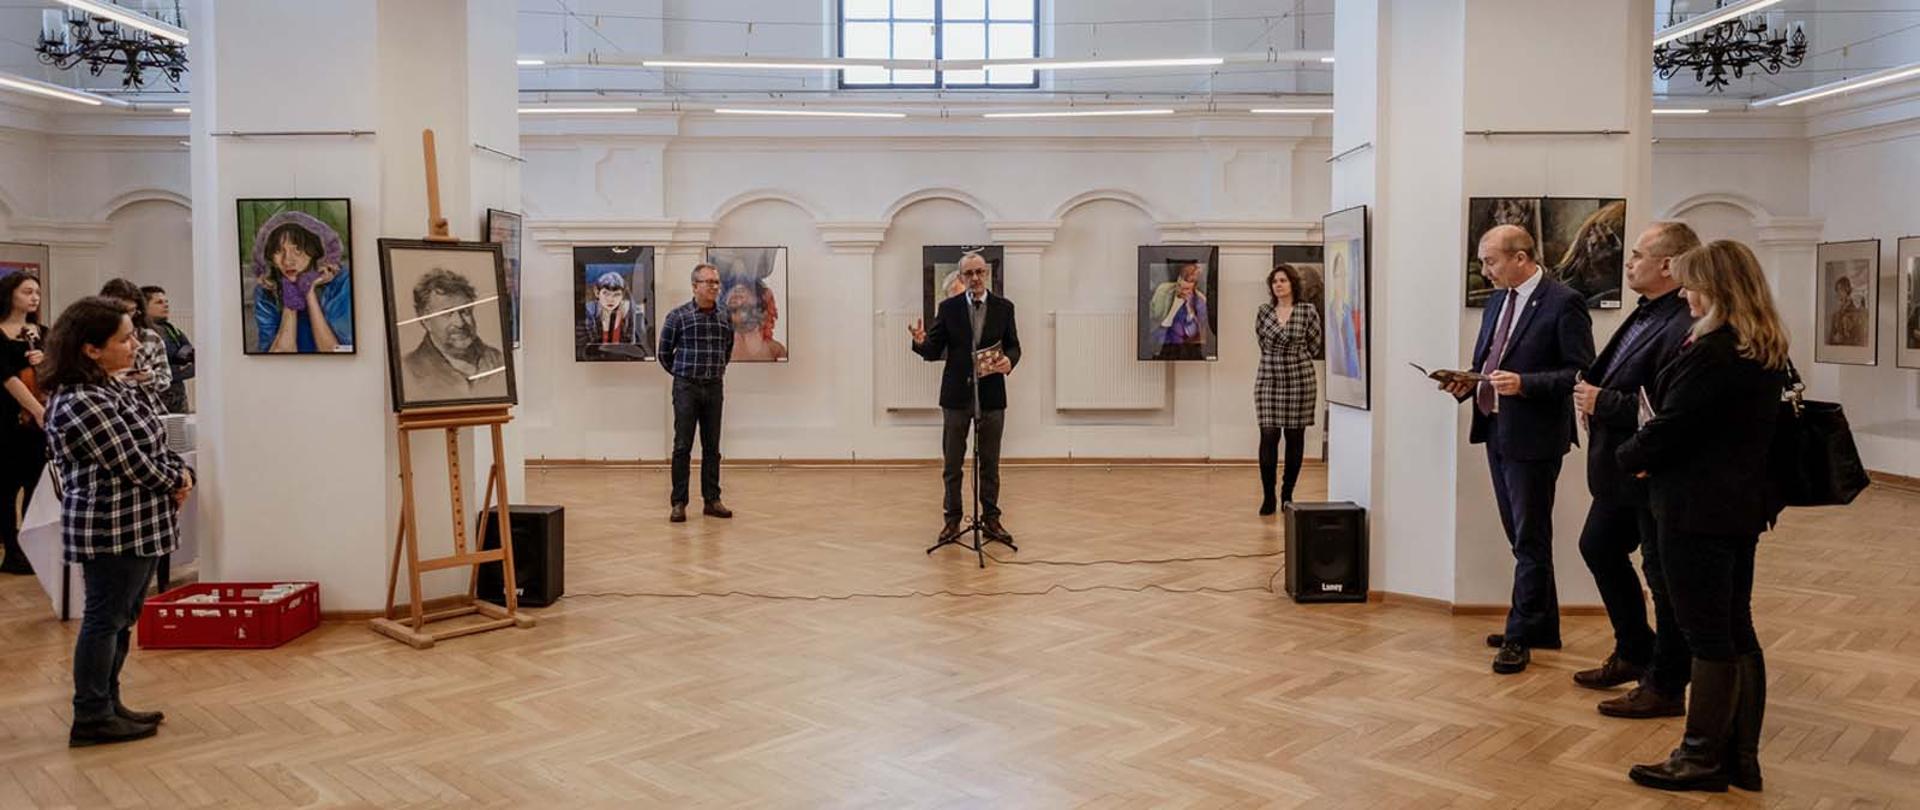 Zdjęcie przedstawia grupę osób które, znajdują się w sali wystawowej PLSP w Jarosławiu. Uroczystość dotyczy otwarcia ogólnopolskiej wystawy pasteli.